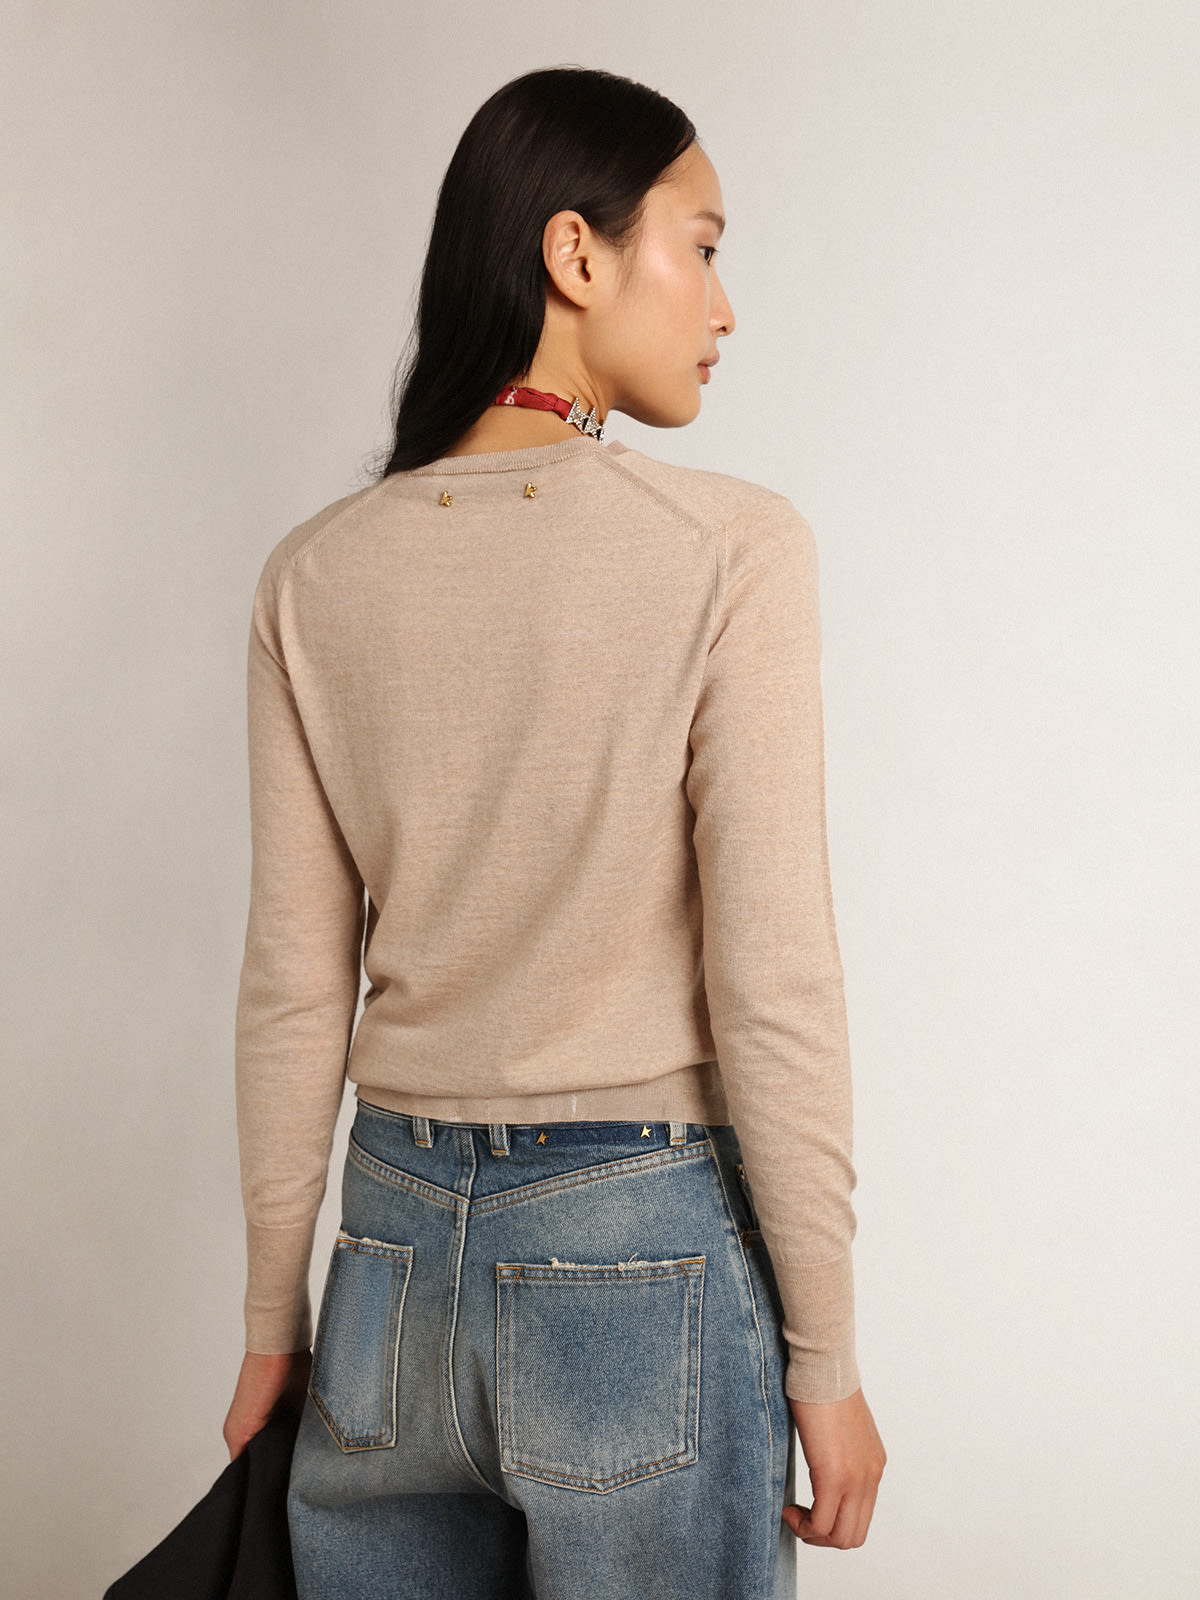 Golden Goose - Women's sweater in light brown merino wool in 